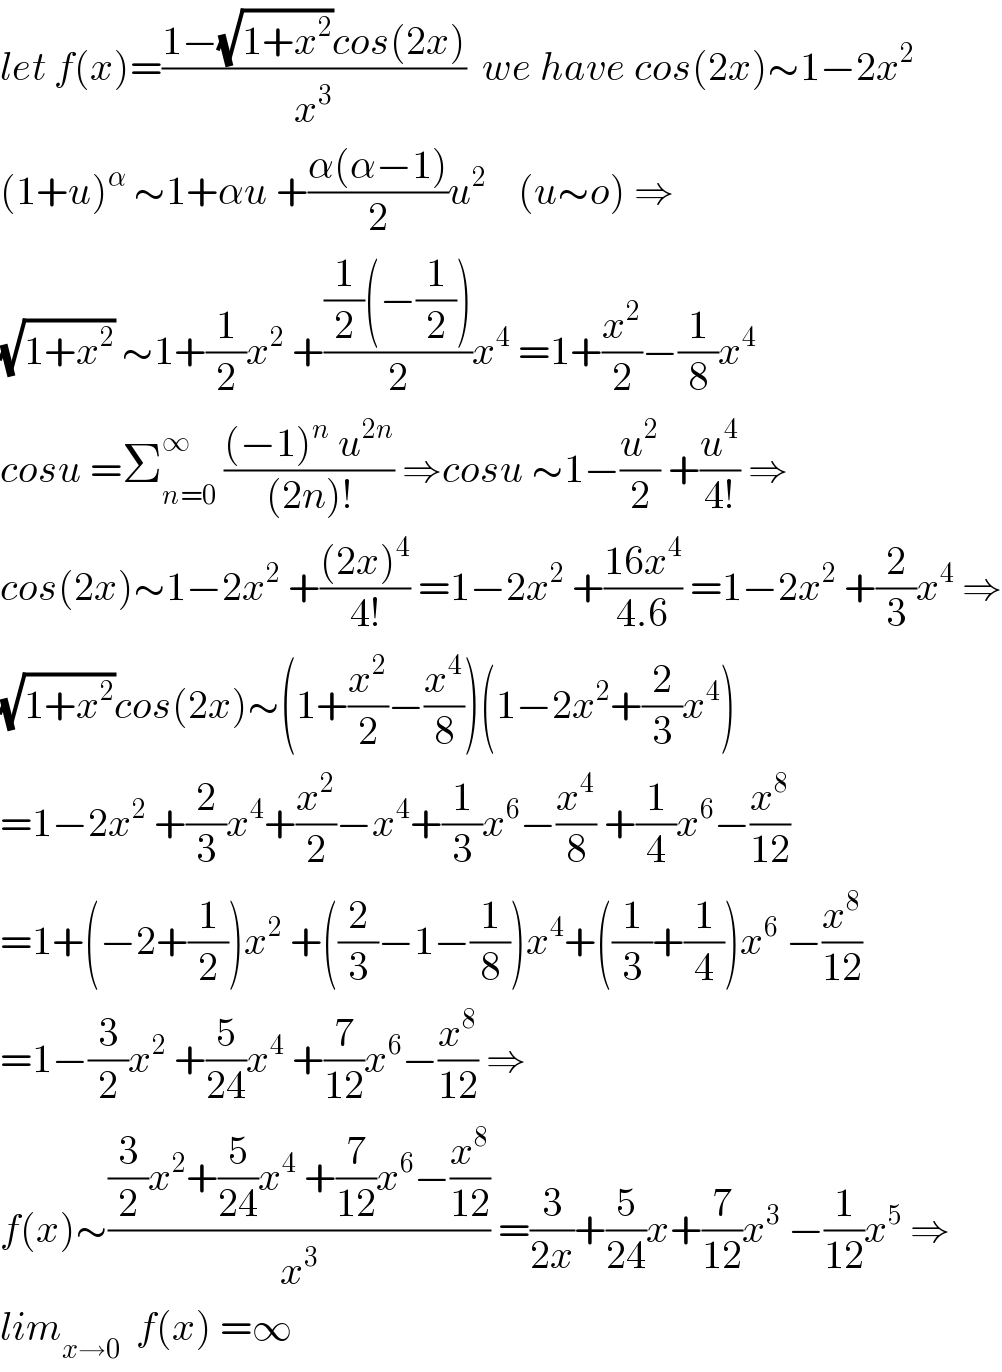 let f(x)=((1−(√(1+x^2 ))cos(2x))/x^3 )  we have cos(2x)∼1−2x^2   (1+u)^α  ∼1+αu +((α(α−1))/2)u^2     (u∼o) ⇒  (√(1+x^2 )) ∼1+(1/2)x^2  +(((1/2)(−(1/2)))/2)x^4  =1+(x^2 /2)−(1/8)x^4   cosu =Σ_(n=0) ^∞  (((−1)^n  u^(2n) )/((2n)!)) ⇒cosu ∼1−(u^2 /2) +(u^4 /(4!)) ⇒  cos(2x)∼1−2x^2  +(((2x)^4 )/(4!)) =1−2x^2  +((16x^4 )/(4.6)) =1−2x^2  +(2/3)x^4  ⇒  (√(1+x^2 ))cos(2x)∼(1+(x^2 /2)−(x^4 /8))(1−2x^2 +(2/3)x^4 )  =1−2x^2  +(2/3)x^4 +(x^2 /2)−x^4 +(1/3)x^6 −(x^4 /8) +(1/4)x^6 −(x^8 /(12))  =1+(−2+(1/2))x^2  +((2/3)−1−(1/8))x^4 +((1/3)+(1/4))x^6  −(x^8 /(12))  =1−(3/2)x^2  +(5/(24))x^4  +(7/(12))x^6 −(x^8 /(12)) ⇒  f(x)∼(((3/2)x^2 +(5/(24))x^4  +(7/(12))x^6 −(x^8 /(12)))/x^3 ) =(3/(2x))+(5/(24))x+(7/(12))x^3  −(1/(12))x^5  ⇒  lim_(x→0)   f(x) =∞  